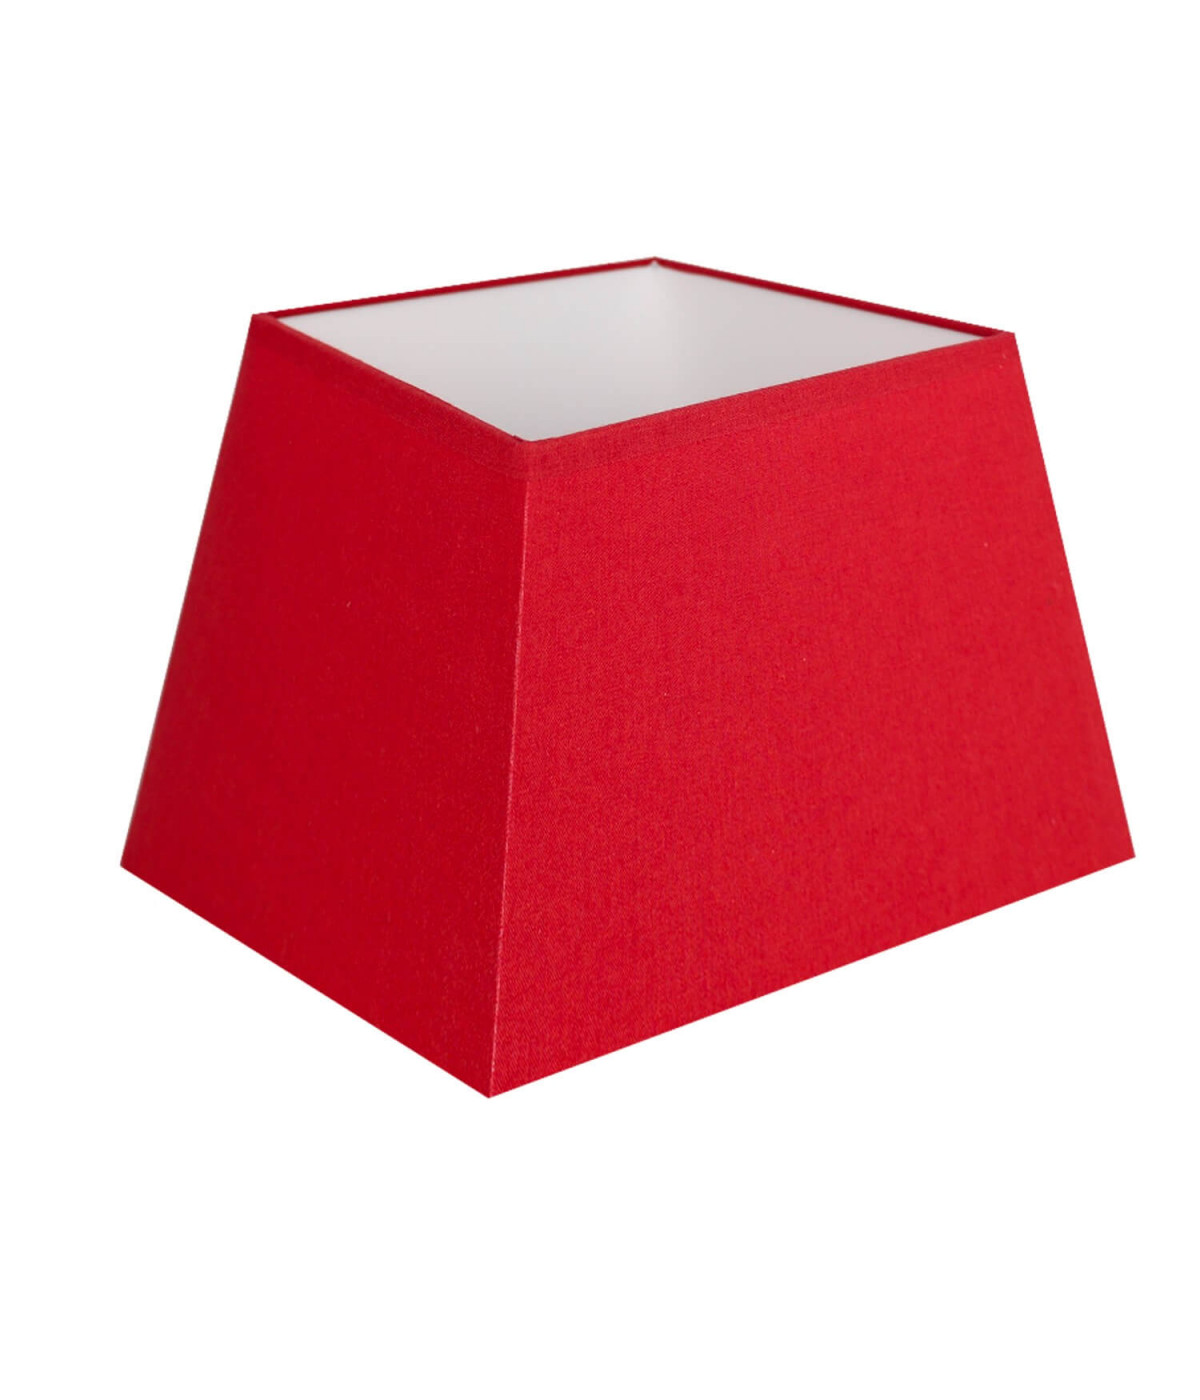 Red pyramidal square shade